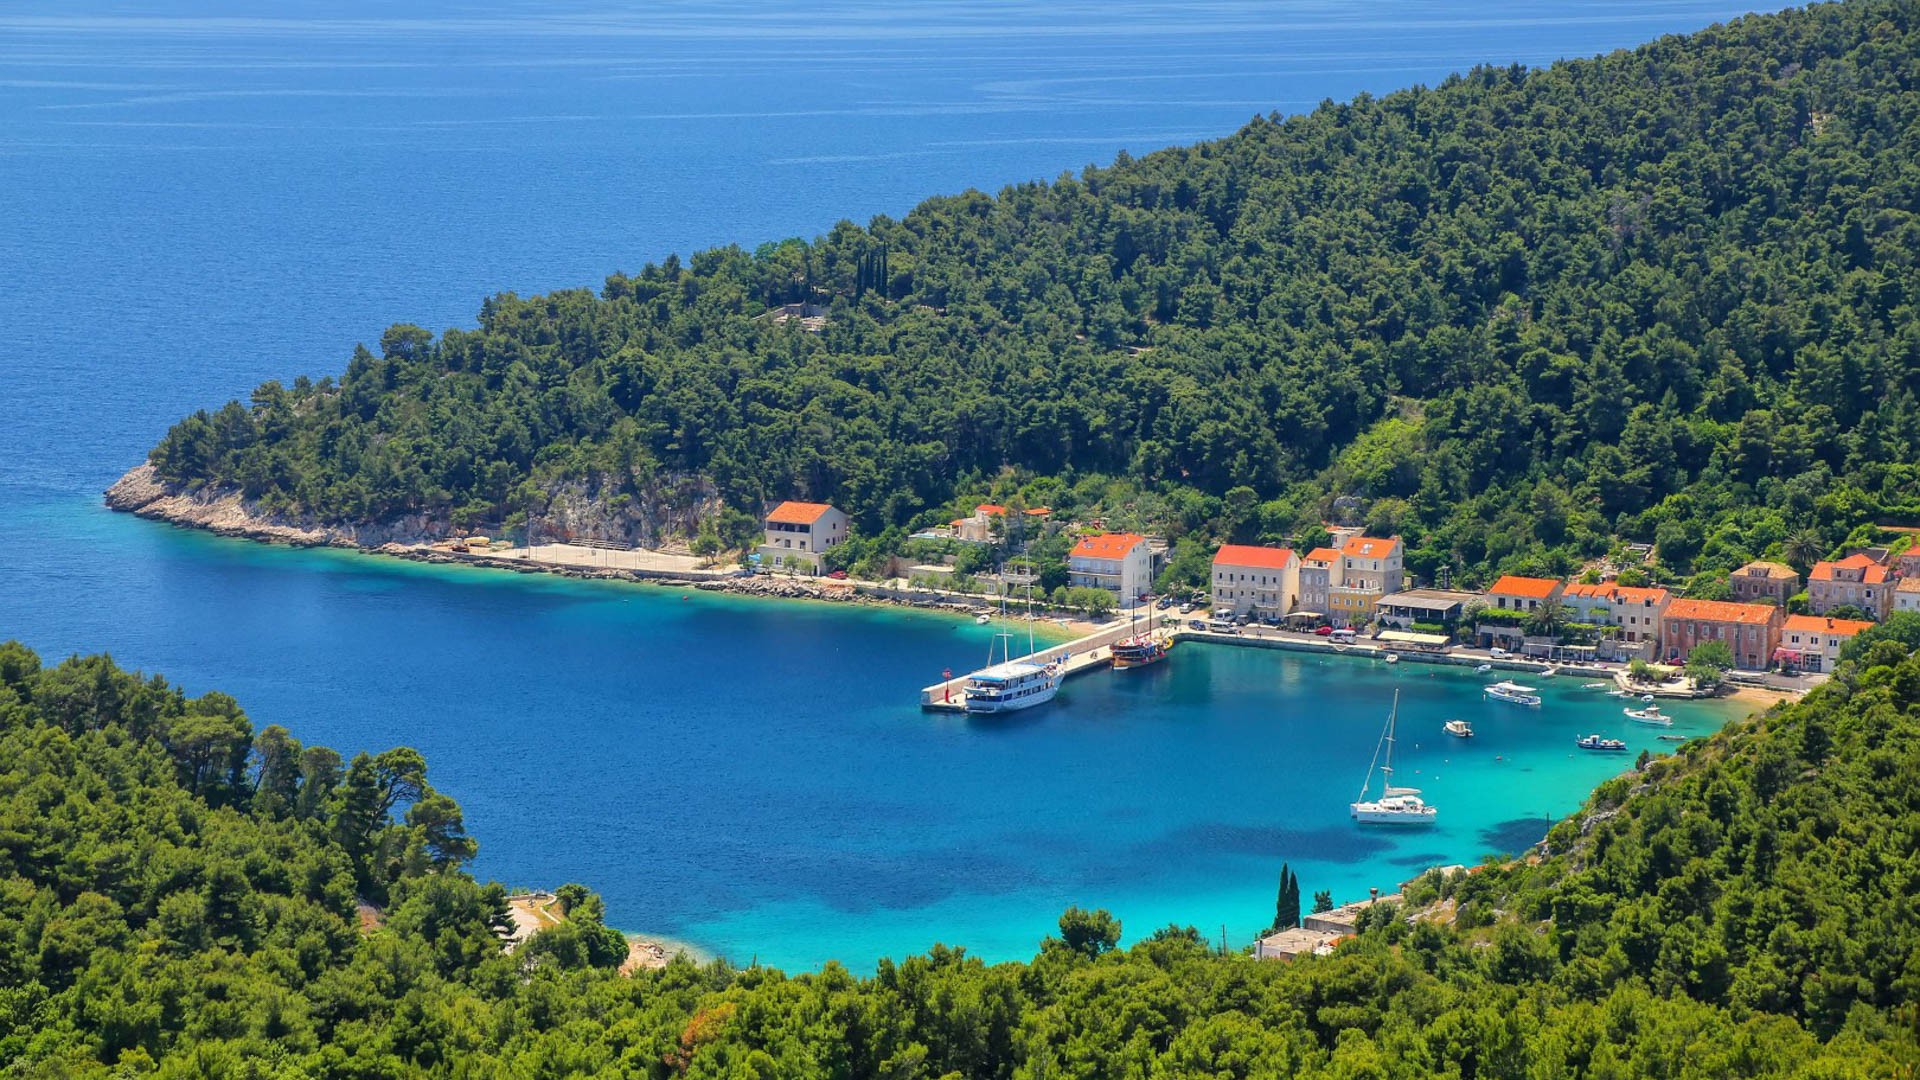 Trstenik - Adriatic Sea | Croatia Cruise Croatia Cruise